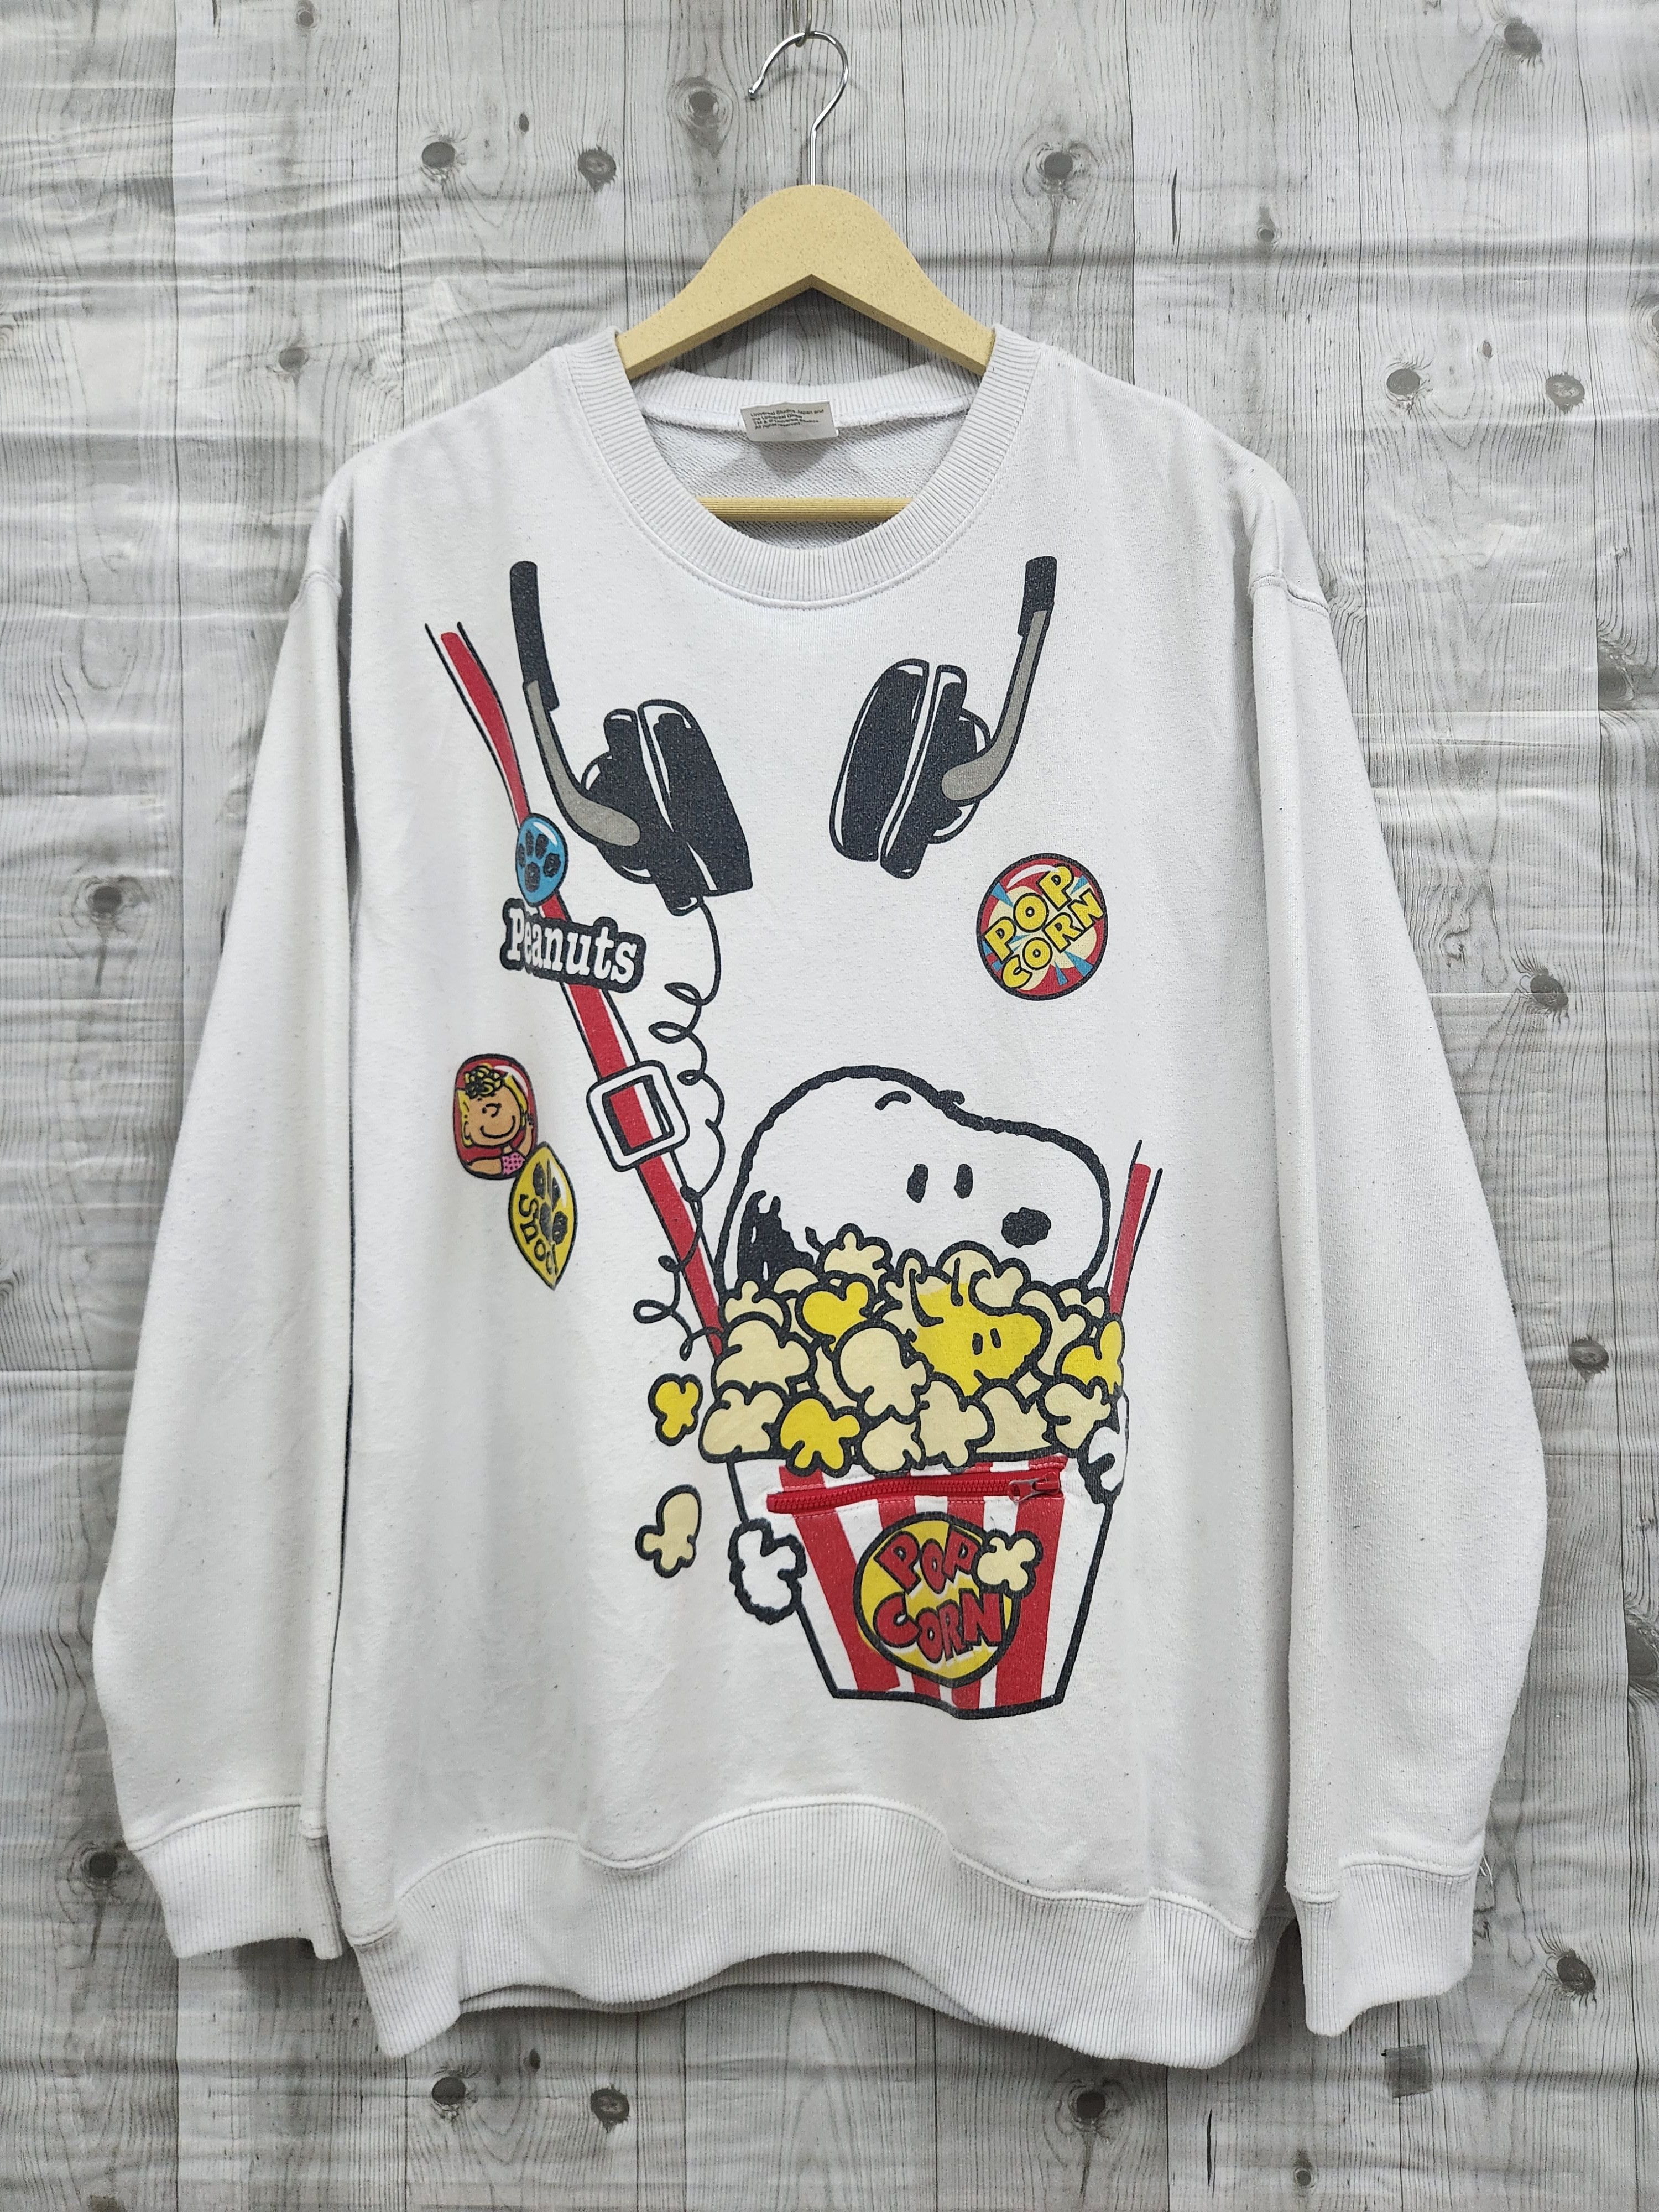 Vintage Peanuts Universal Studios Japan Jumper Sweater - 1